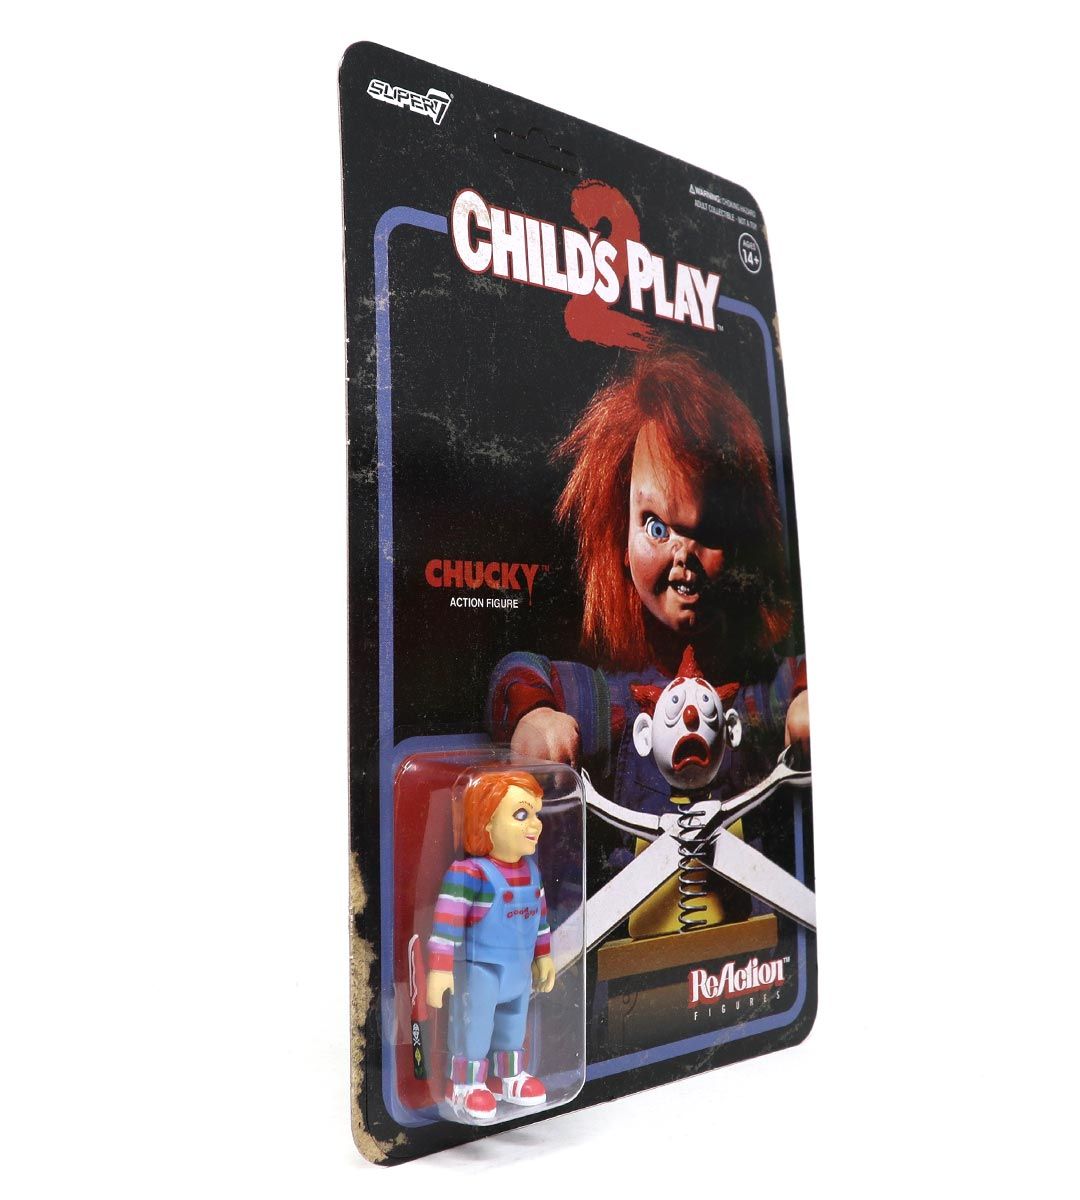 Chucky - ReAction figure